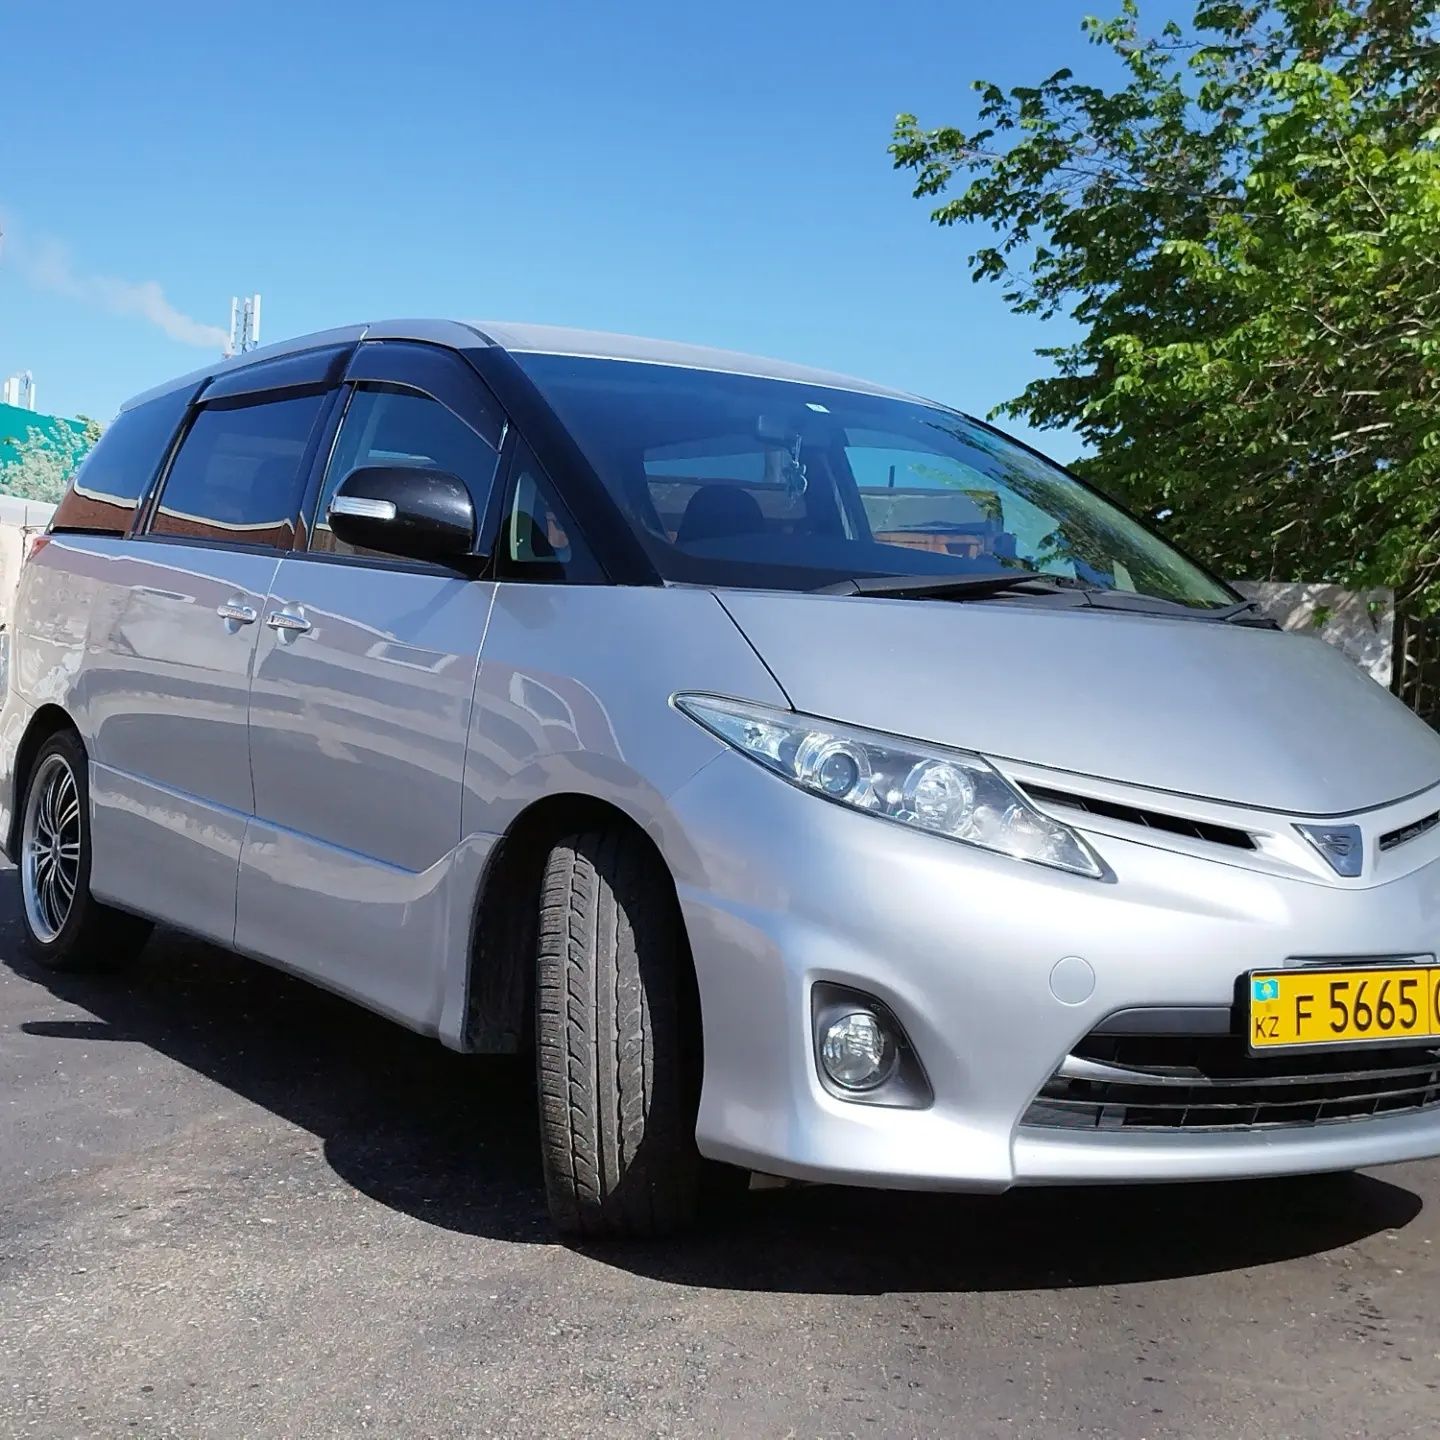 Продам Toyota Estima 2011года на Казахстанском учёте.